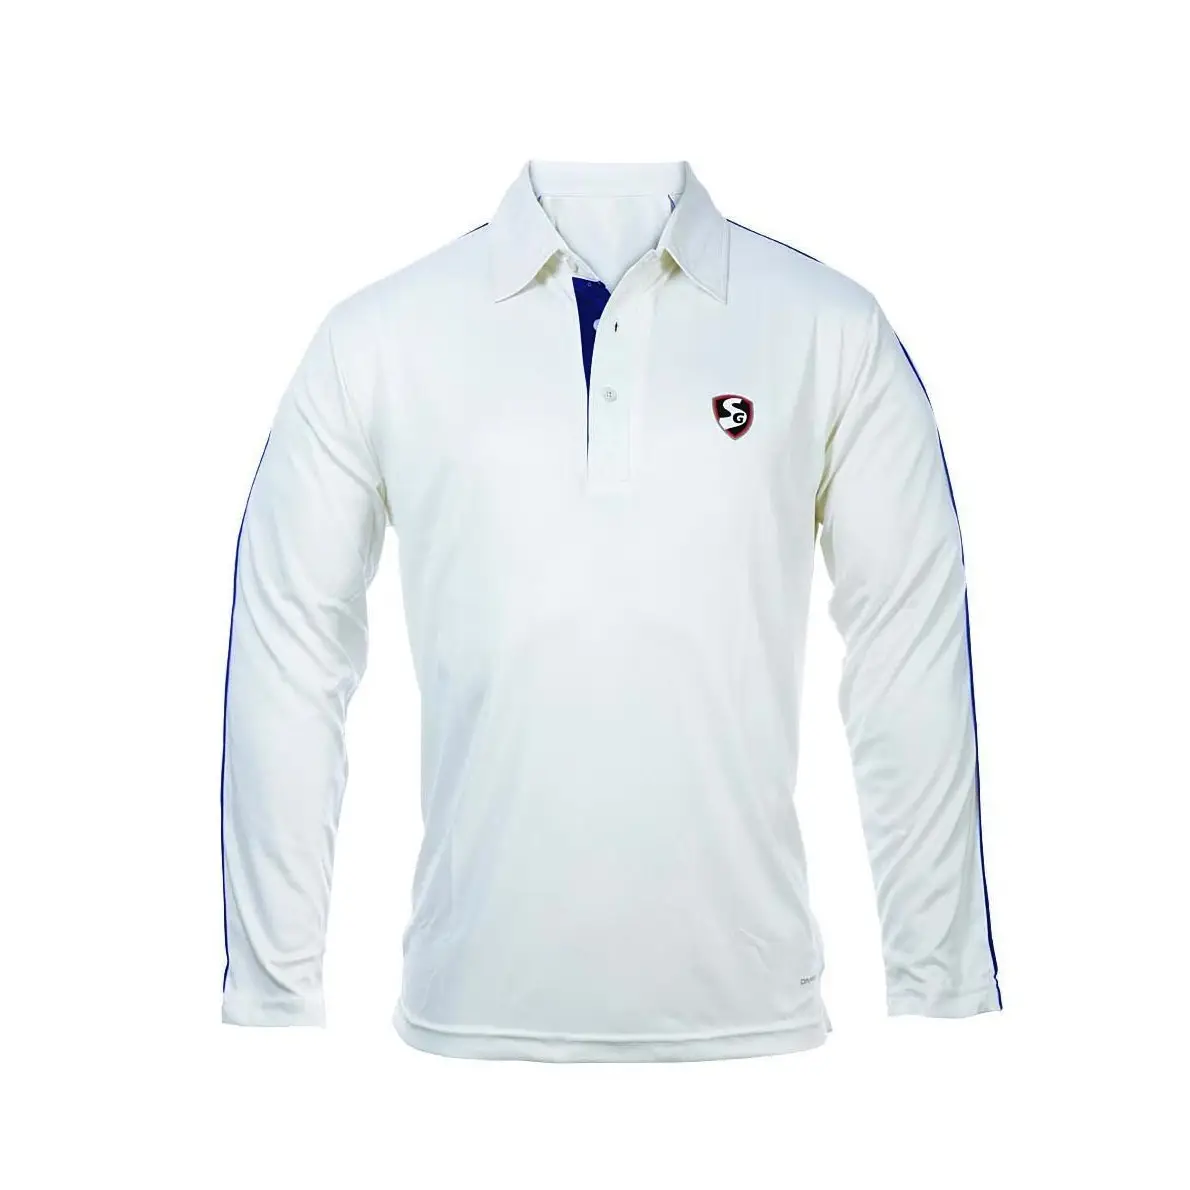 SG Century White Cricket Shirt Full Sleeve Premium Quality - CLOTHING - SHIRT